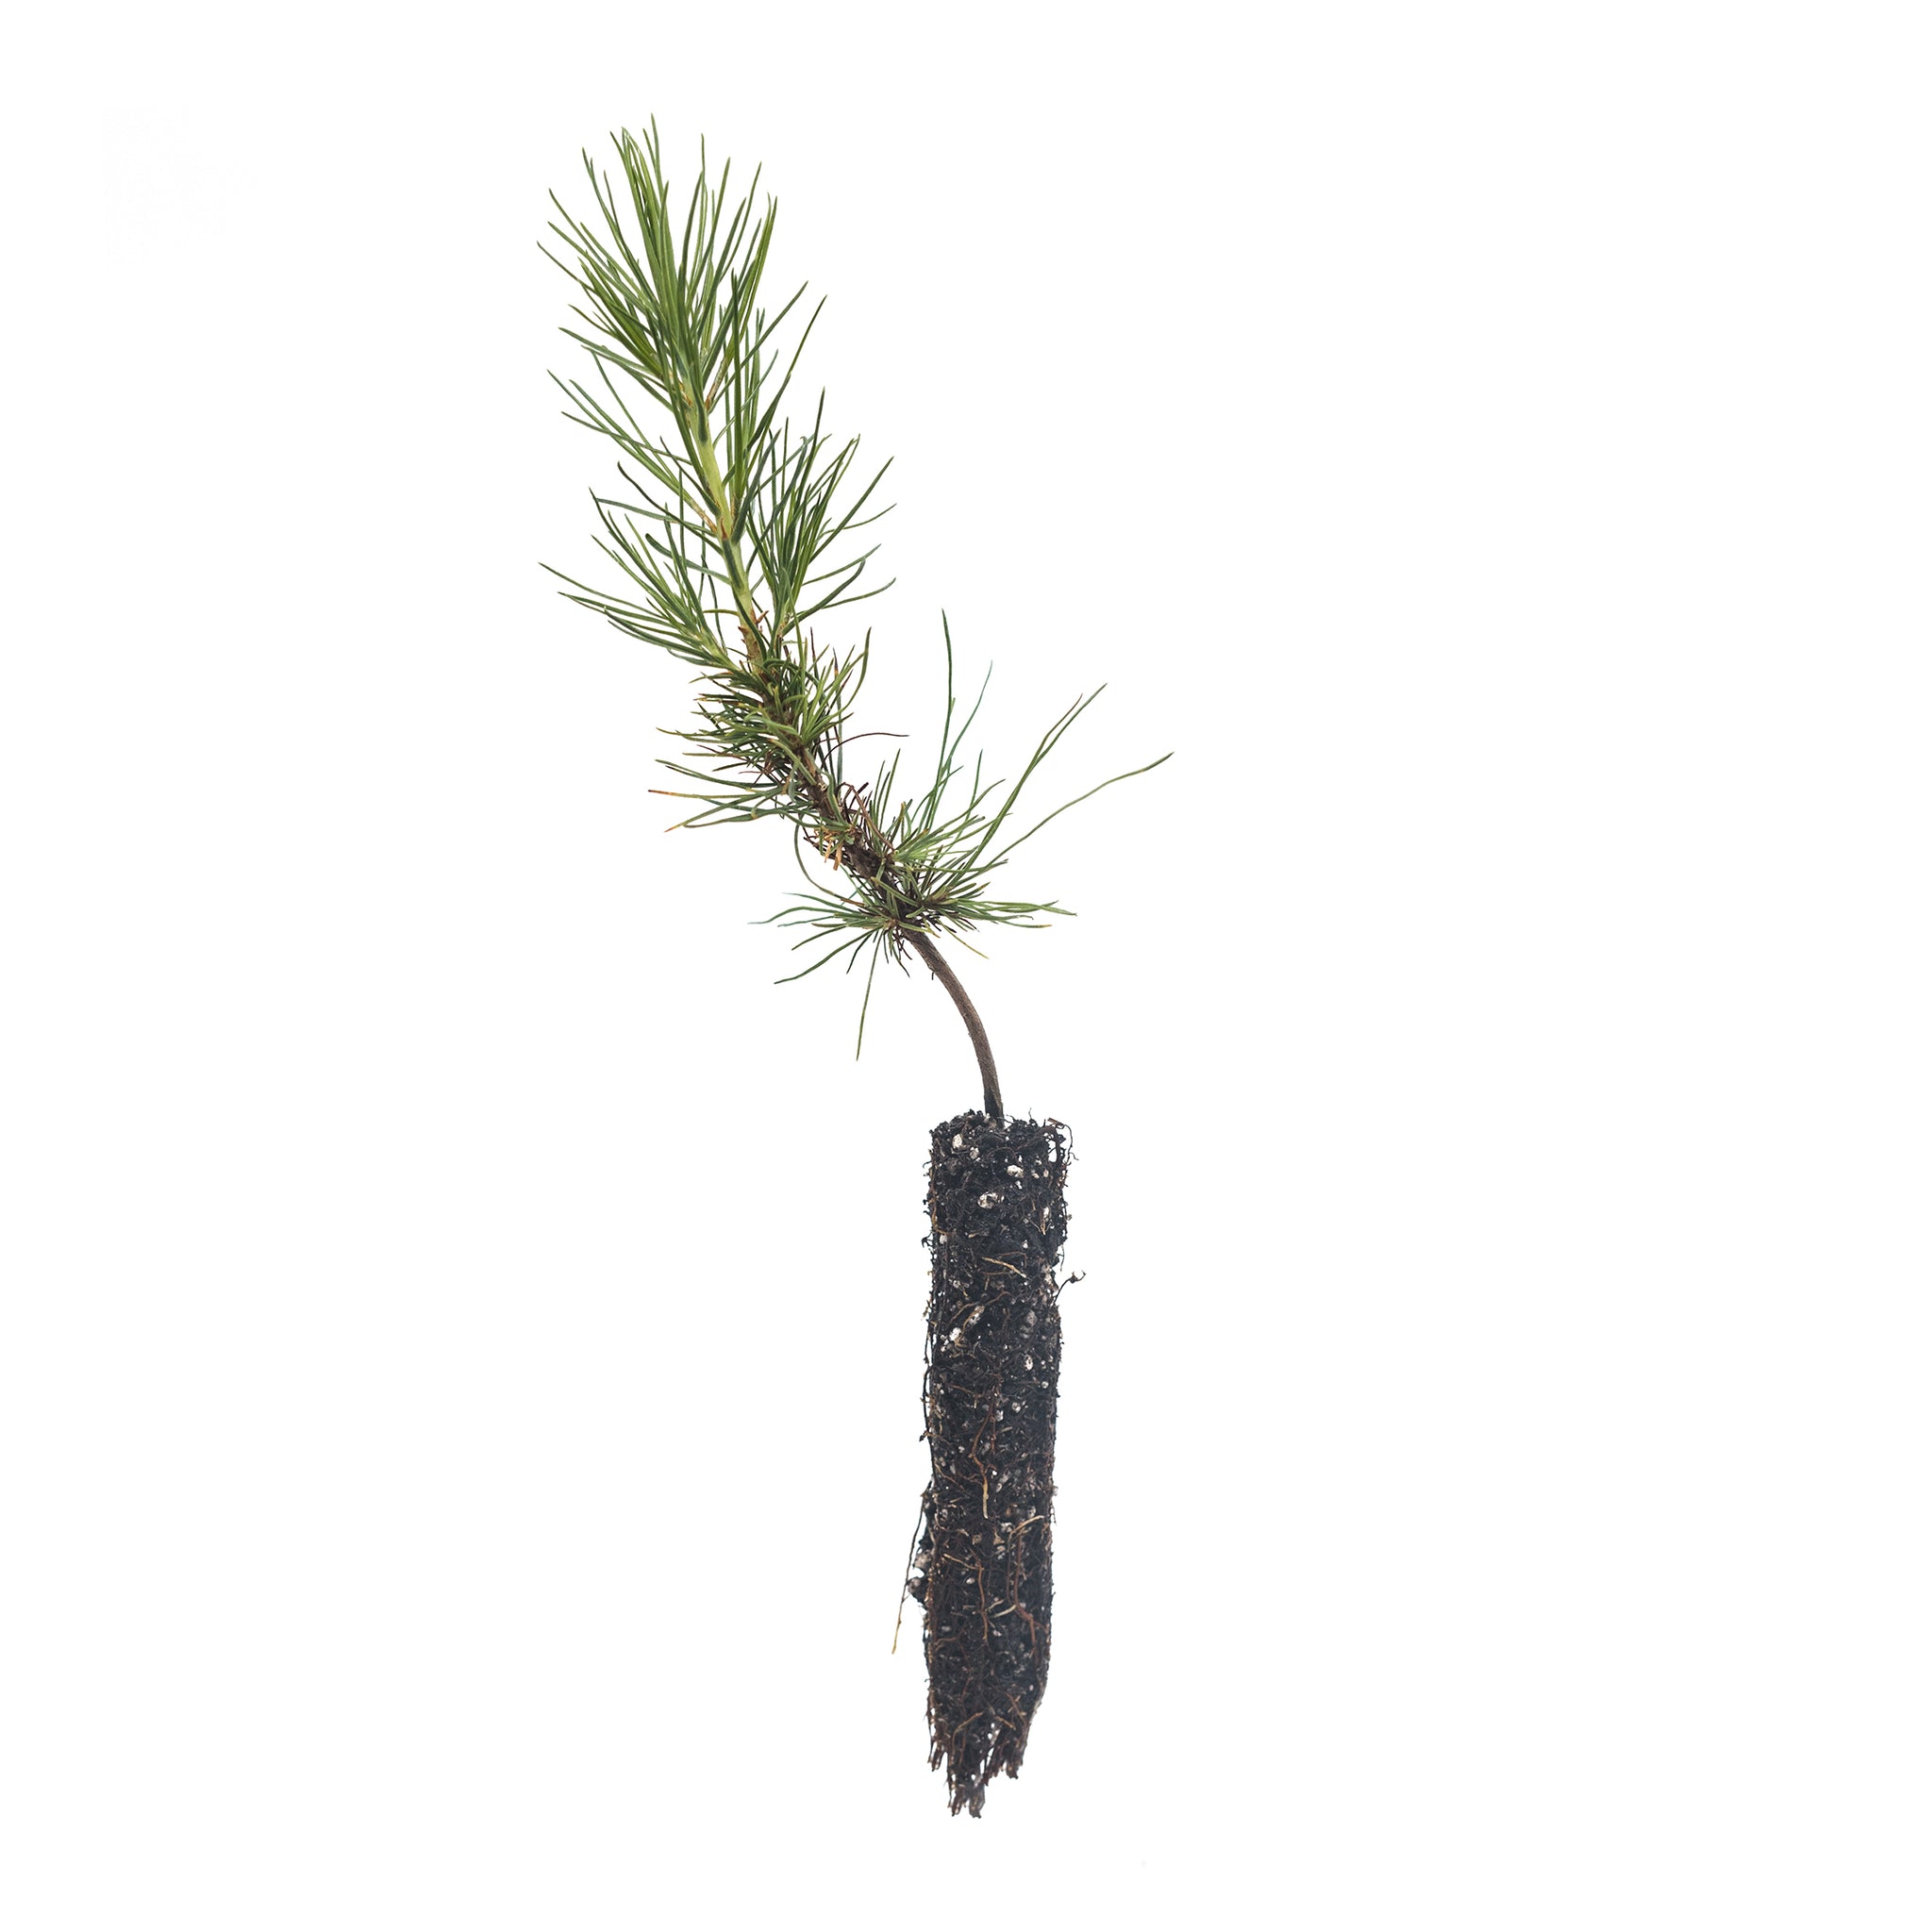 Piccole pigne crescono.. Small pine cones grow